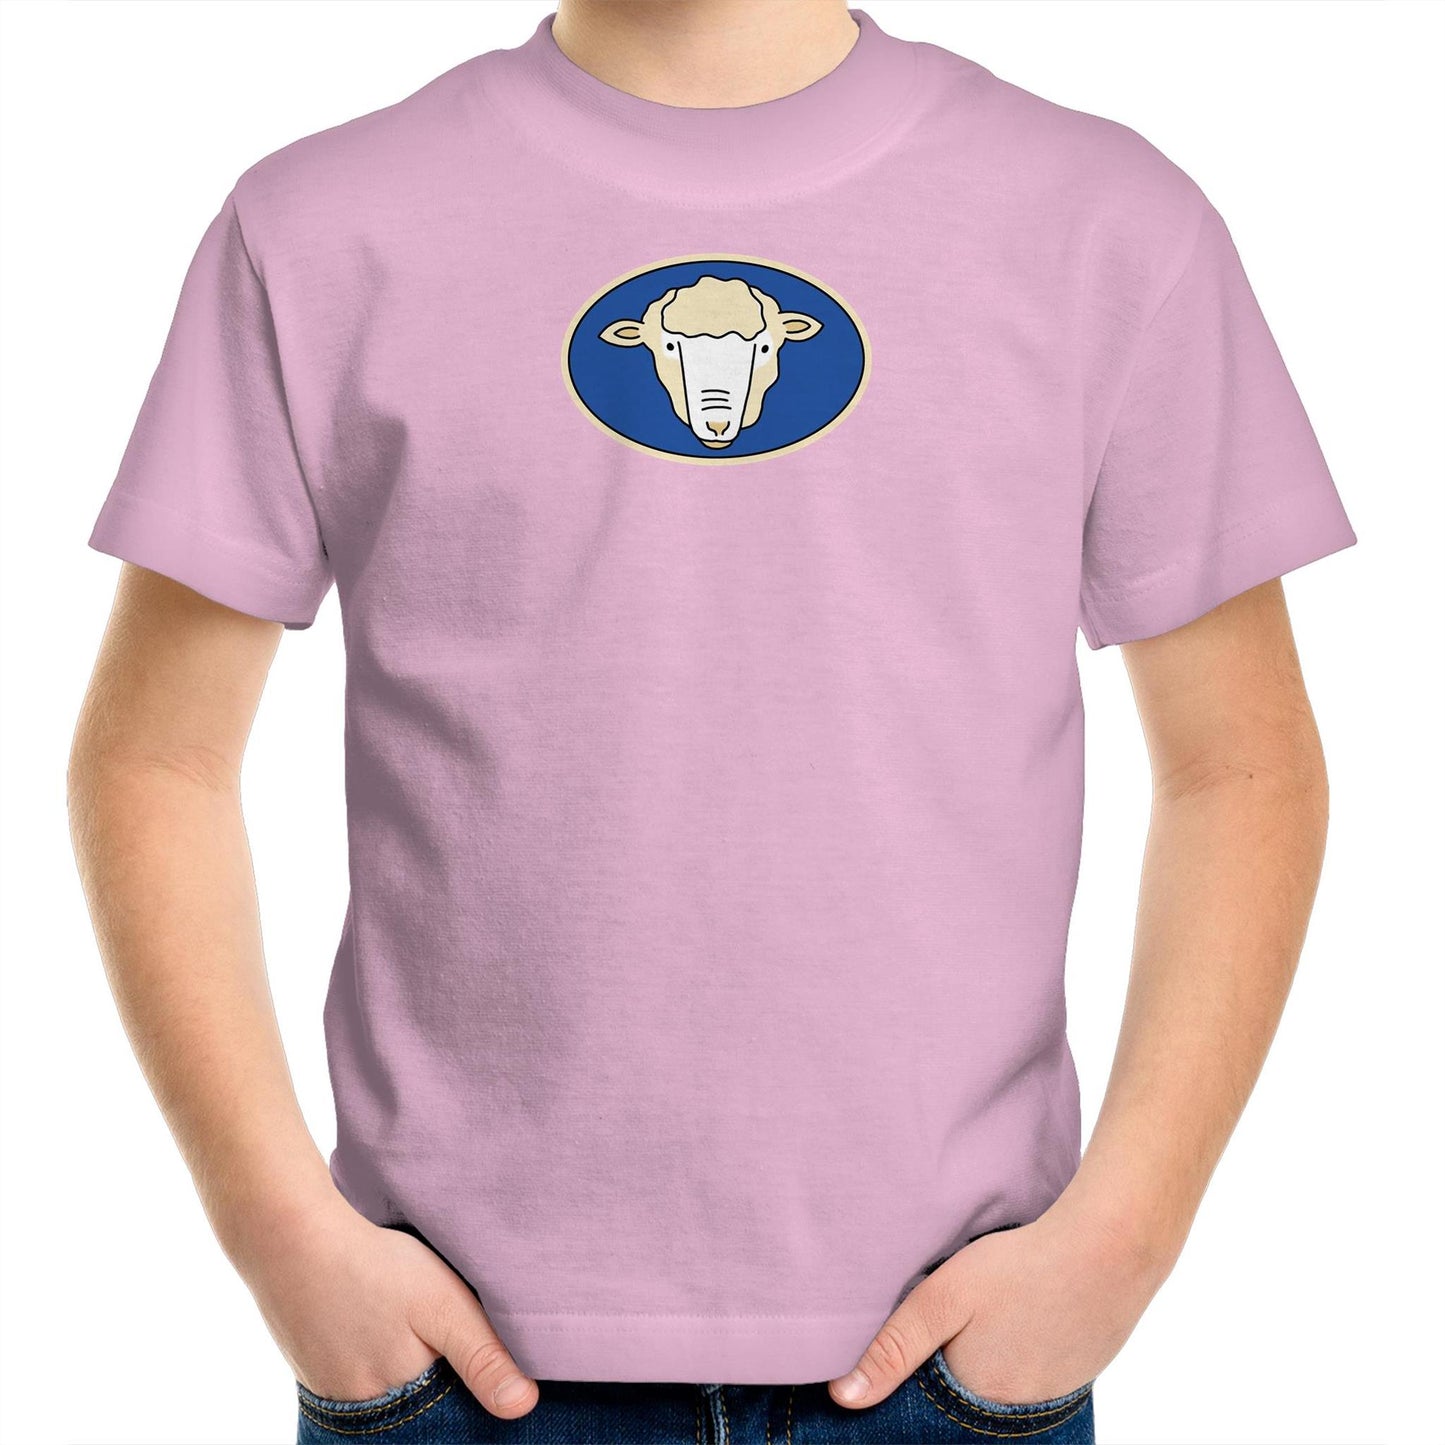 Butcher Shop Café T Shirts for Kids